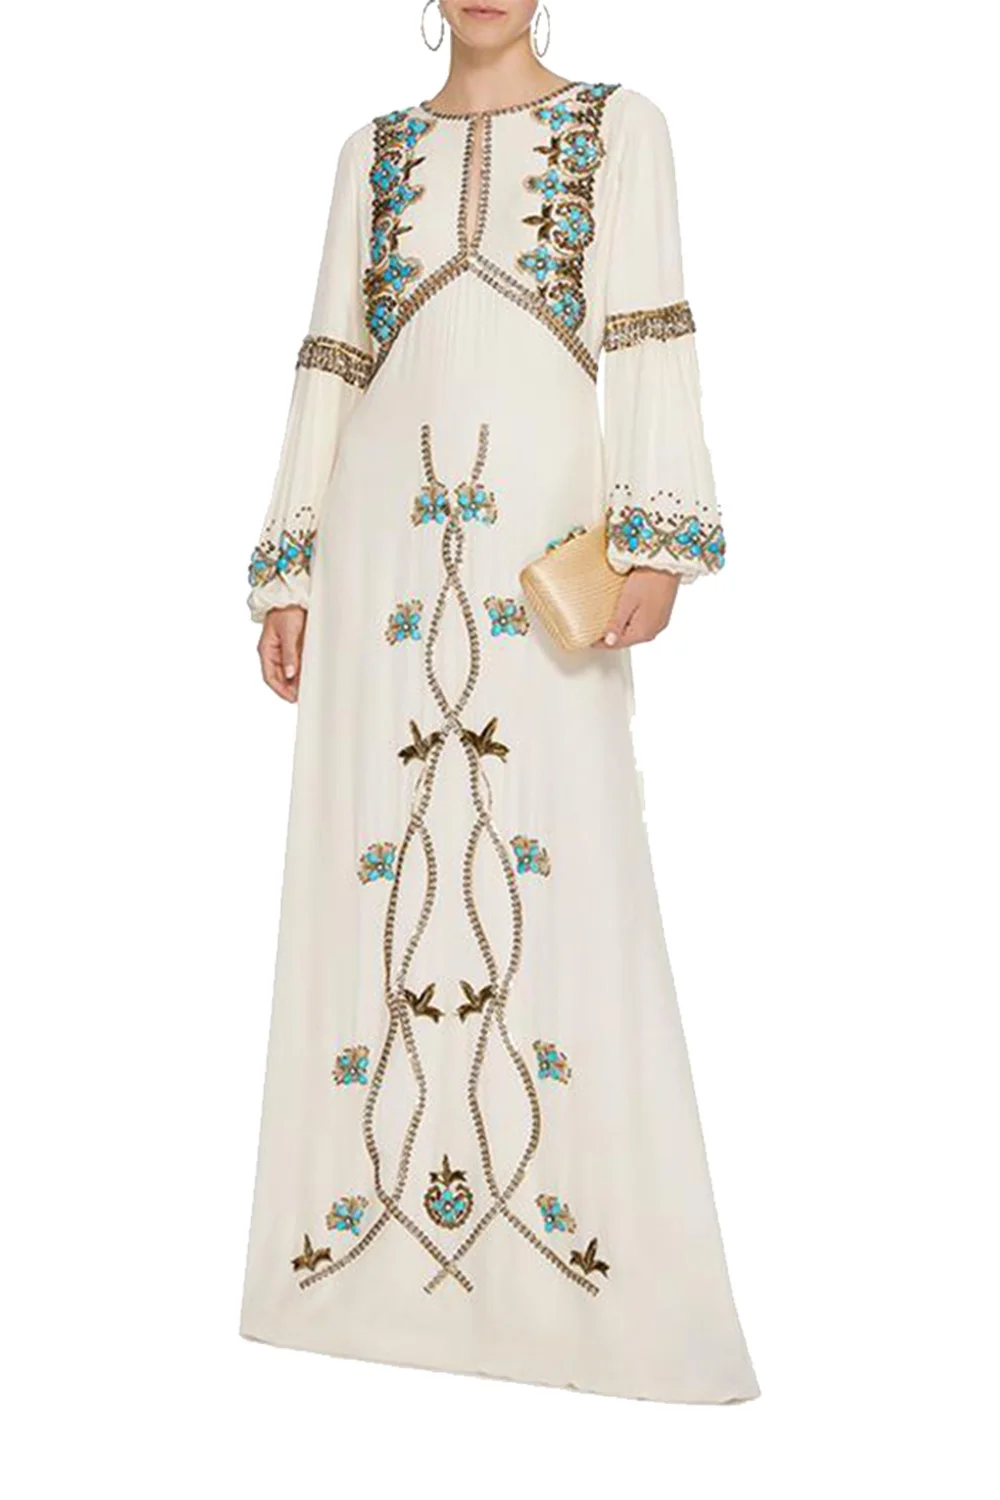 Женское вечернее платье с вышивкой,, длинный рукав, о-образный вырез, сексуальное длинное платье в стиле бохо, vestidos, женское элегантное пляжное платье на весну и лето - Цвет: White